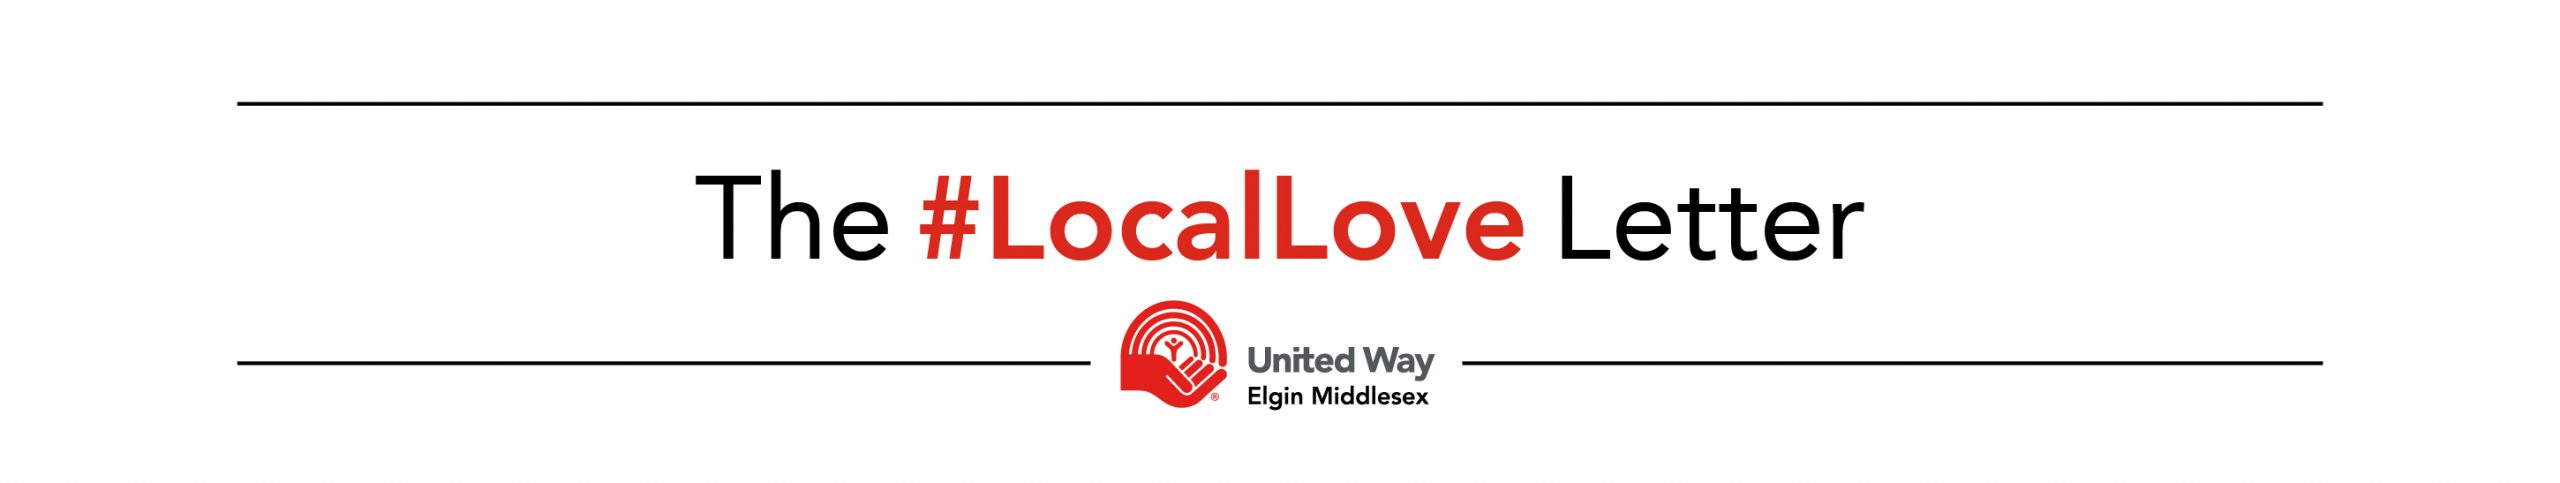 The #LocalLove Letter